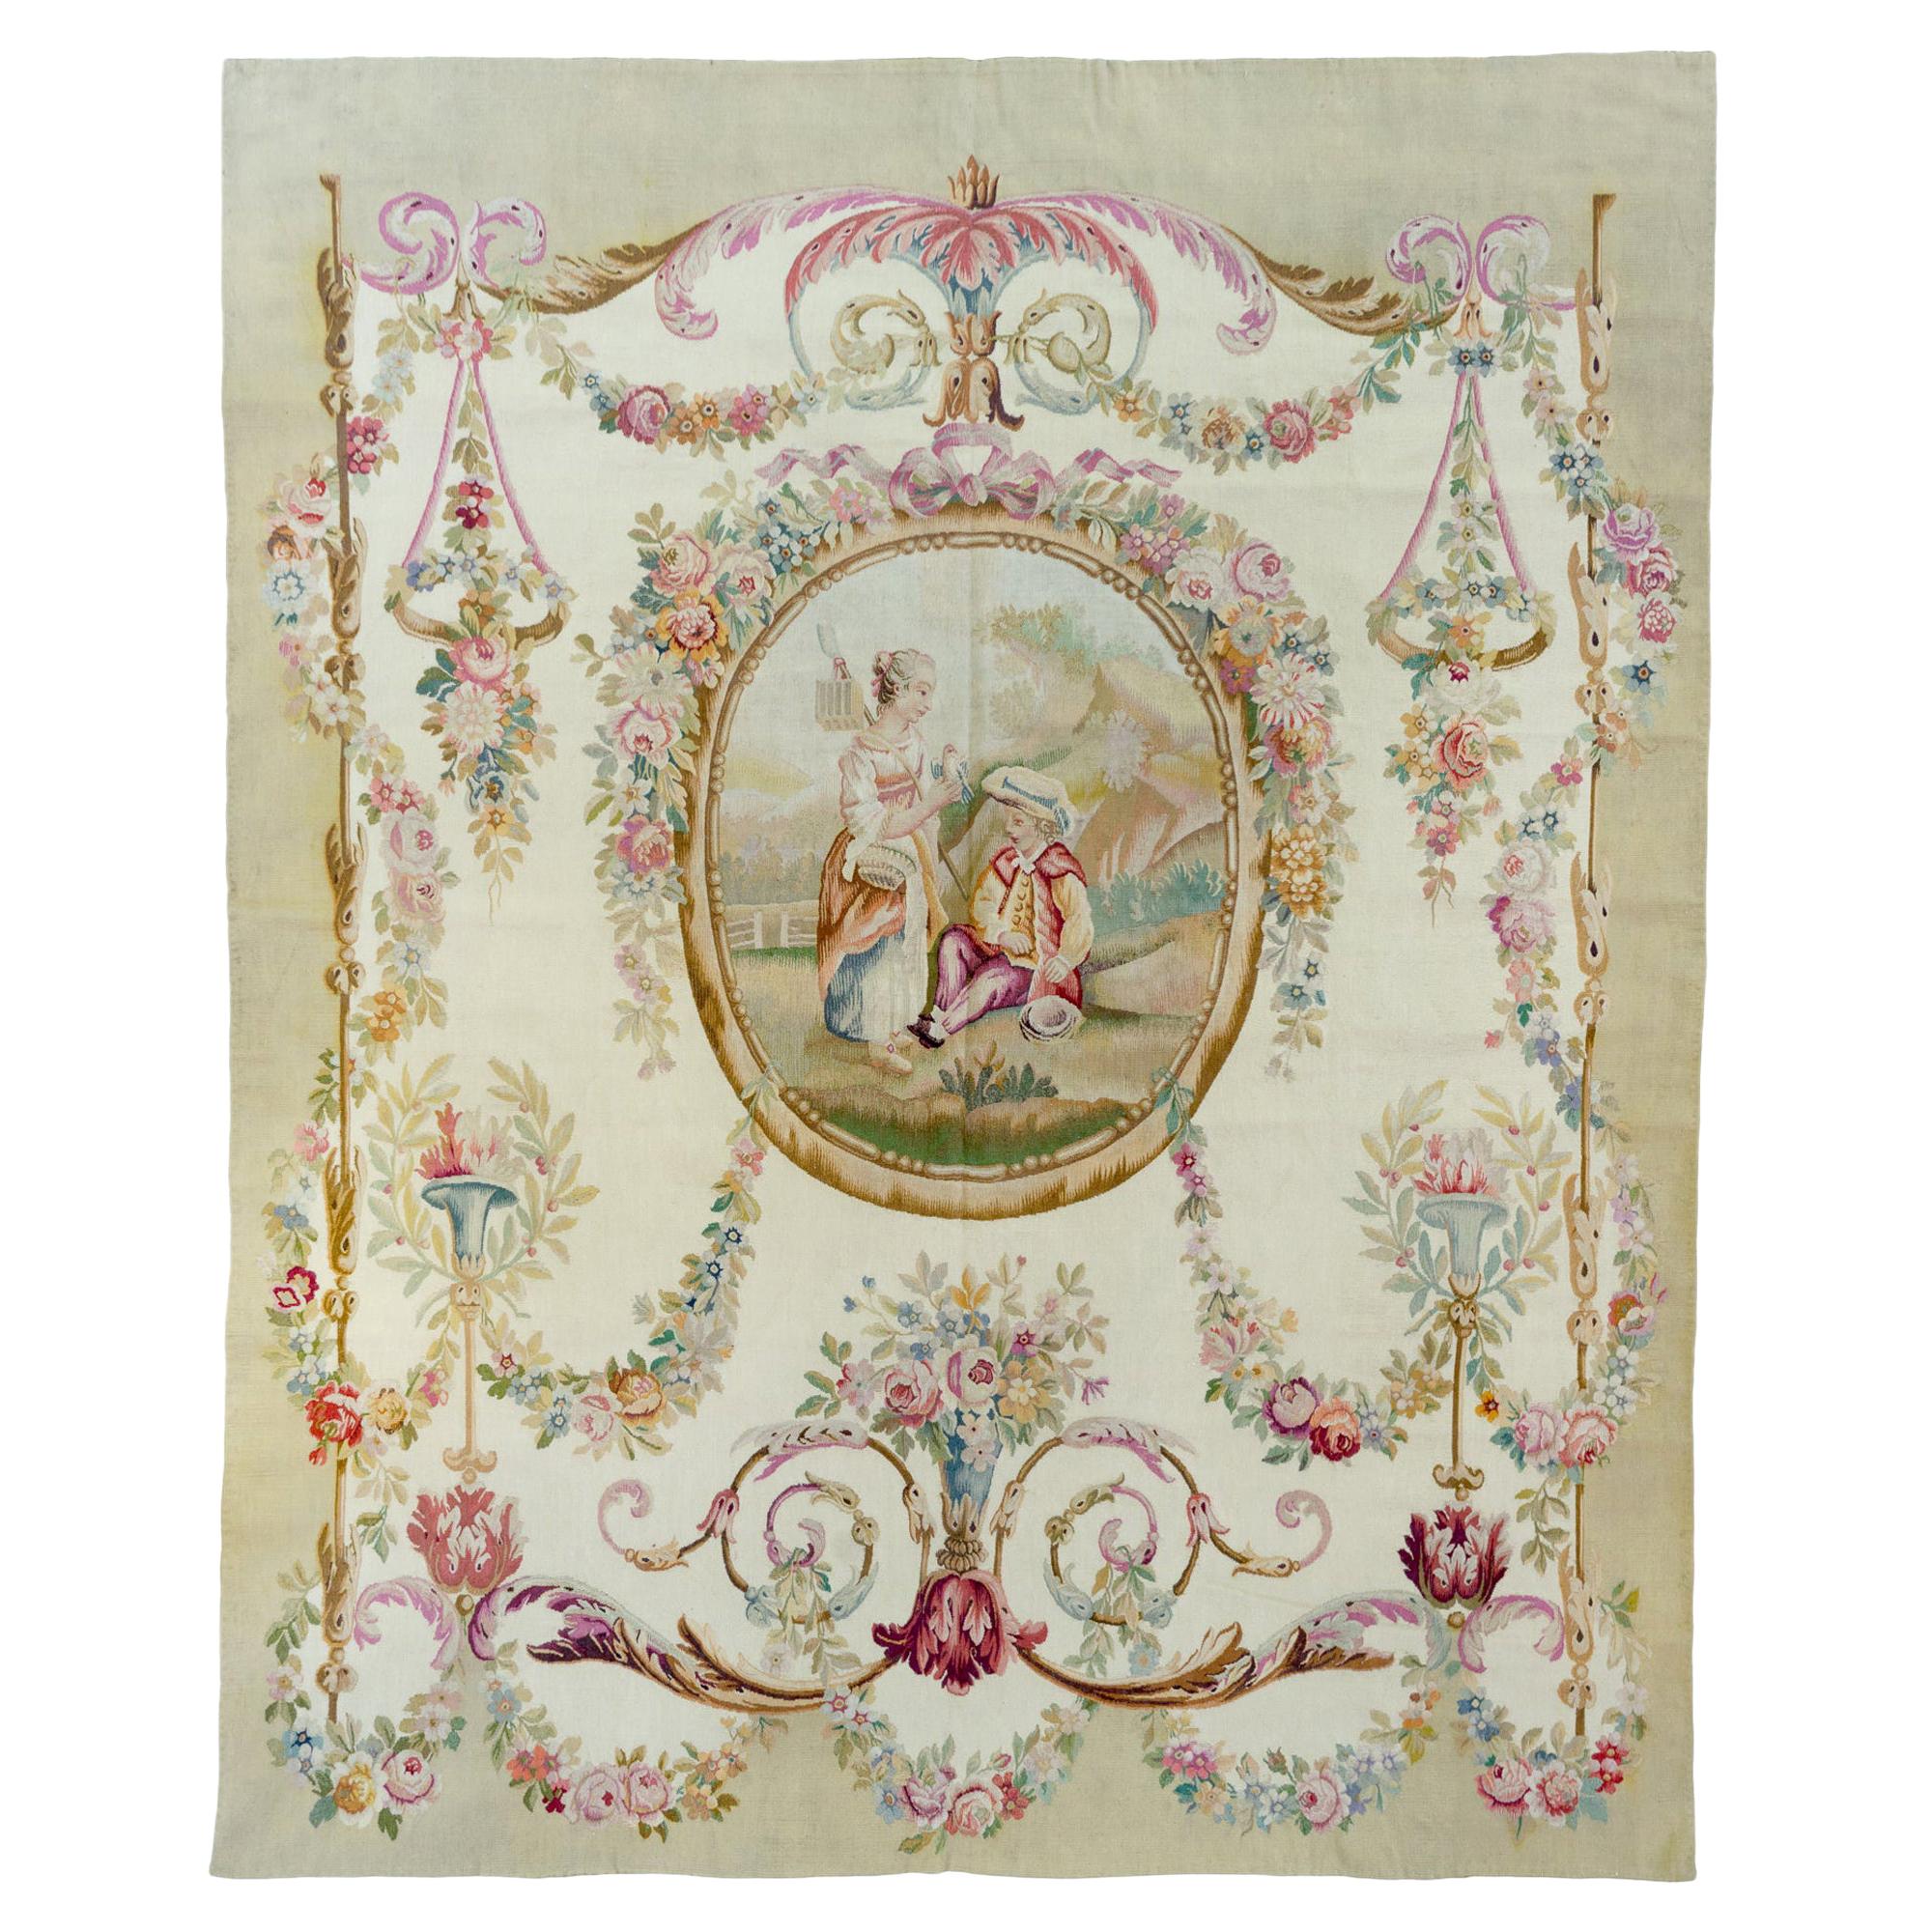 Tapisserie française ancienne d'Aubusson du 19ème siècle, ornée de fleurs ivoires